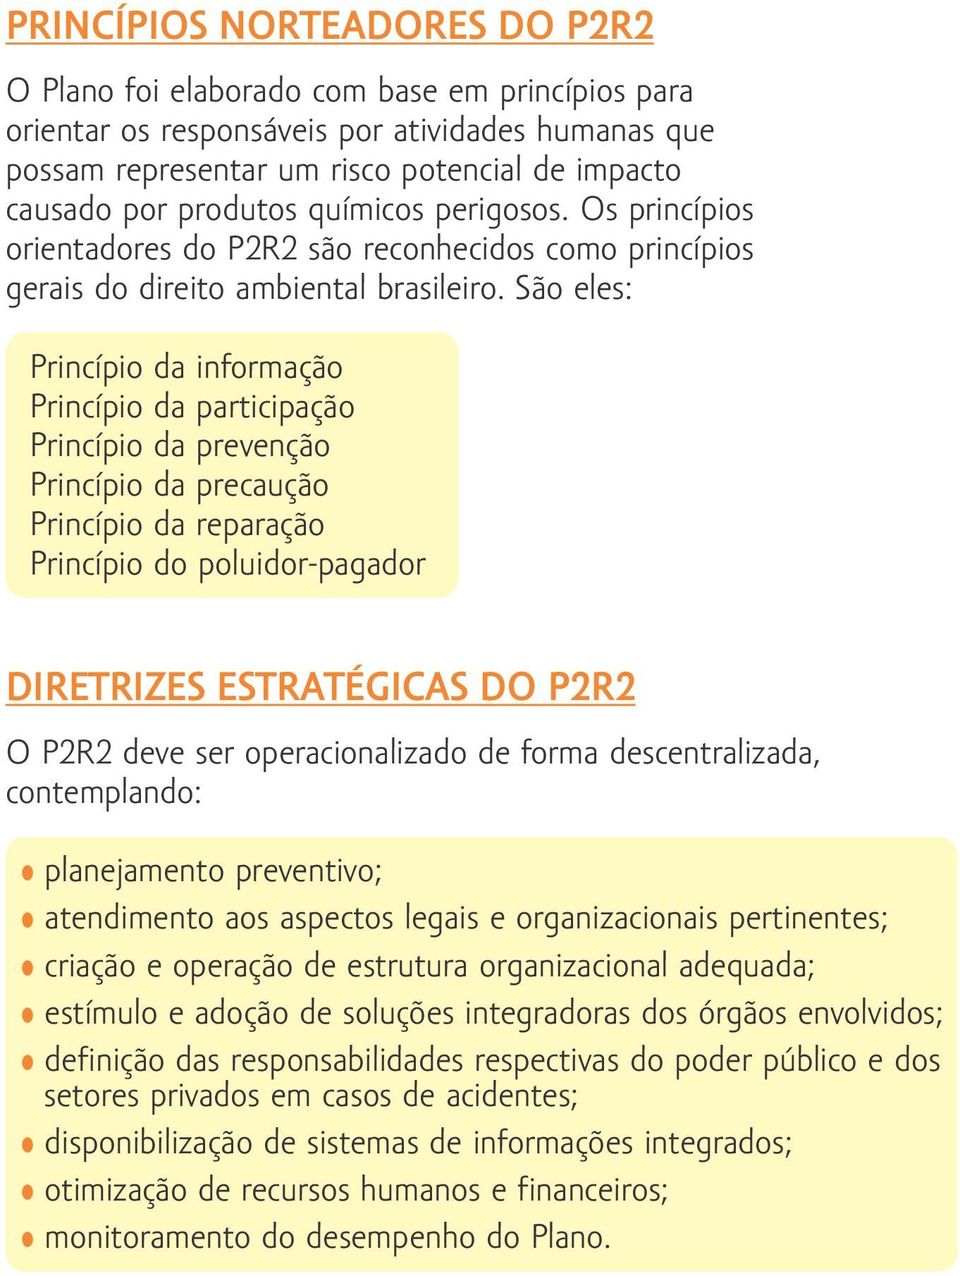 São eles: Princípio da informação Princípio da participação Princípio da prevenção Princípio da precaução Princípio da reparação Princípio do poluidor-pagador DIRETRIZES ESTRATÉGICAS DO P2R2 O P2R2